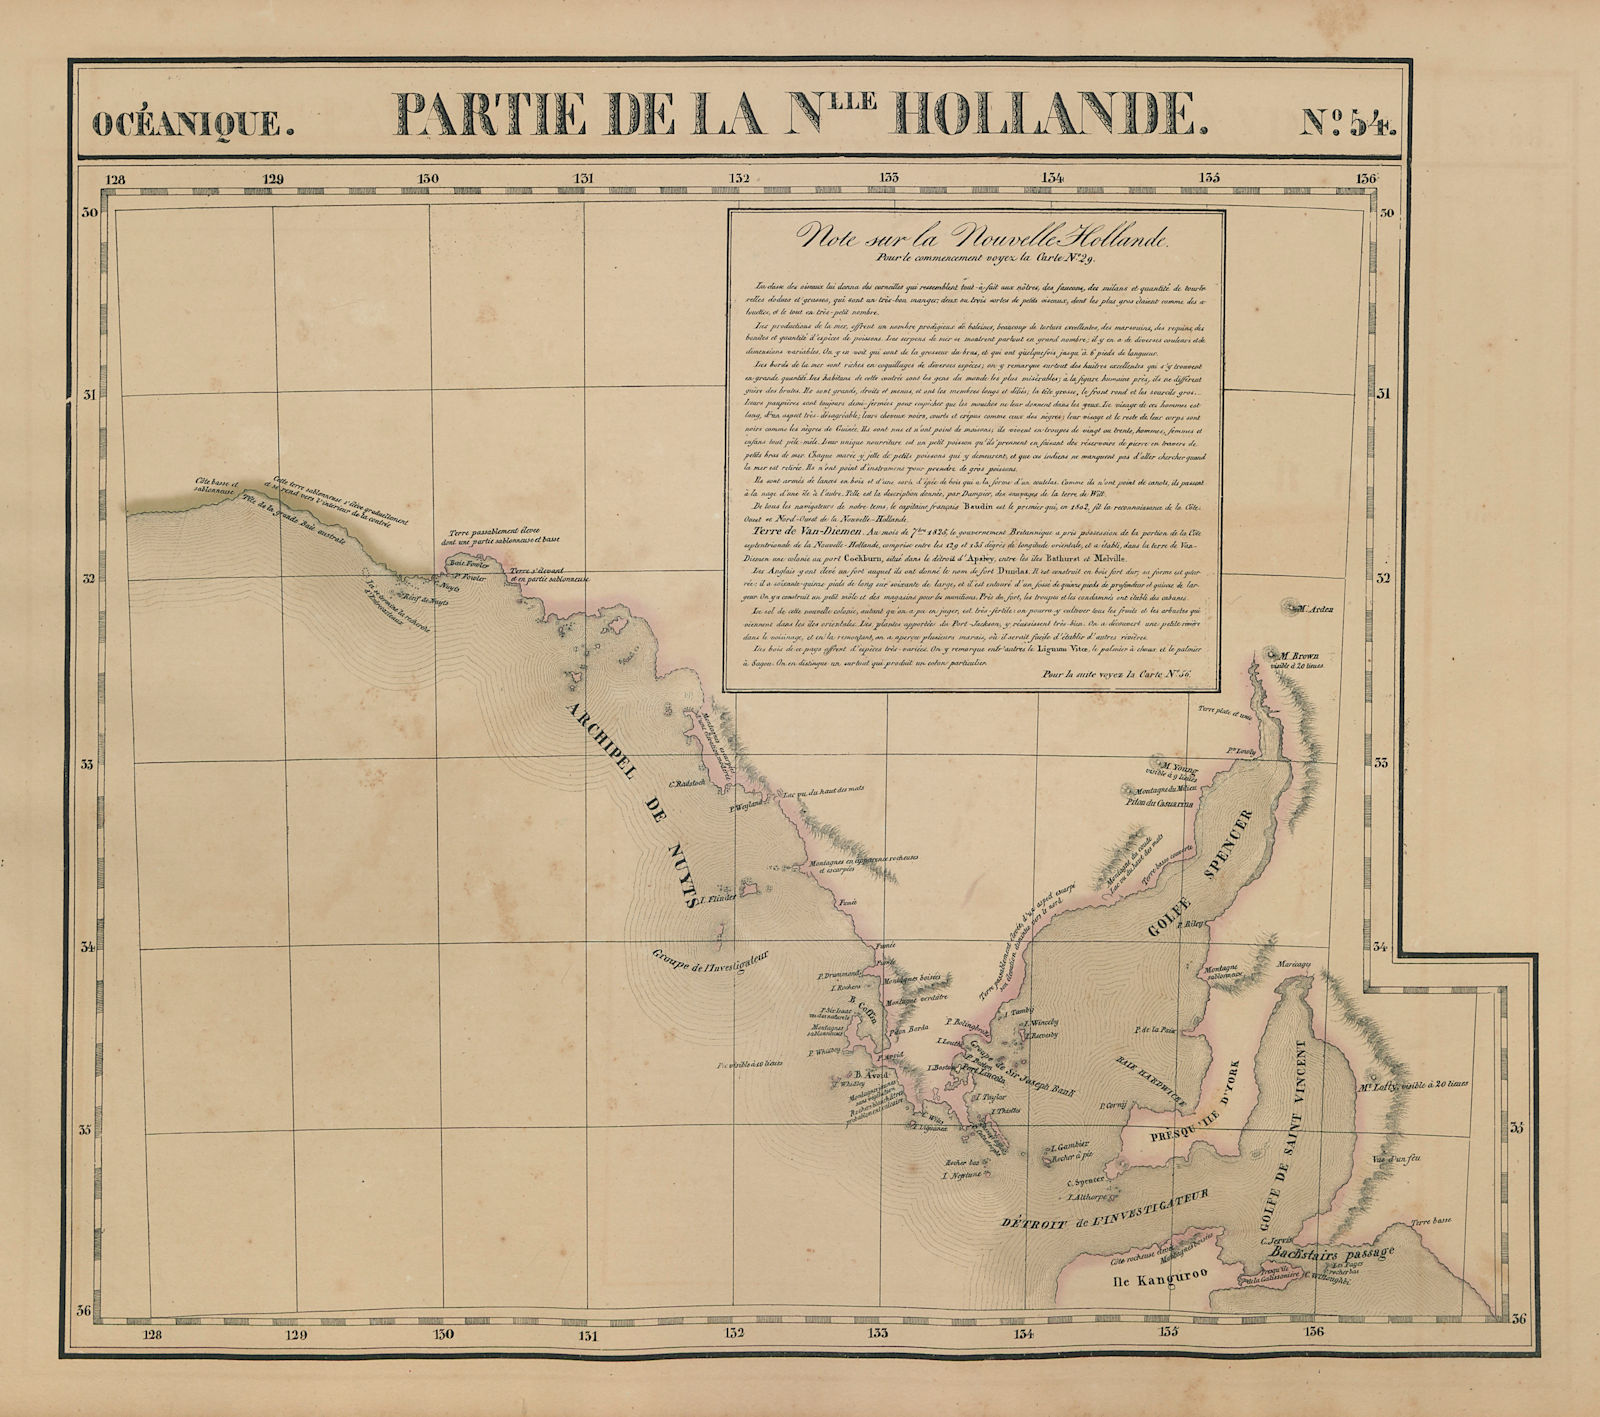 Associate Product Océanique. Partie… Nlle Hollande #54 South Australia coast VANDERMAELEN 1827 map